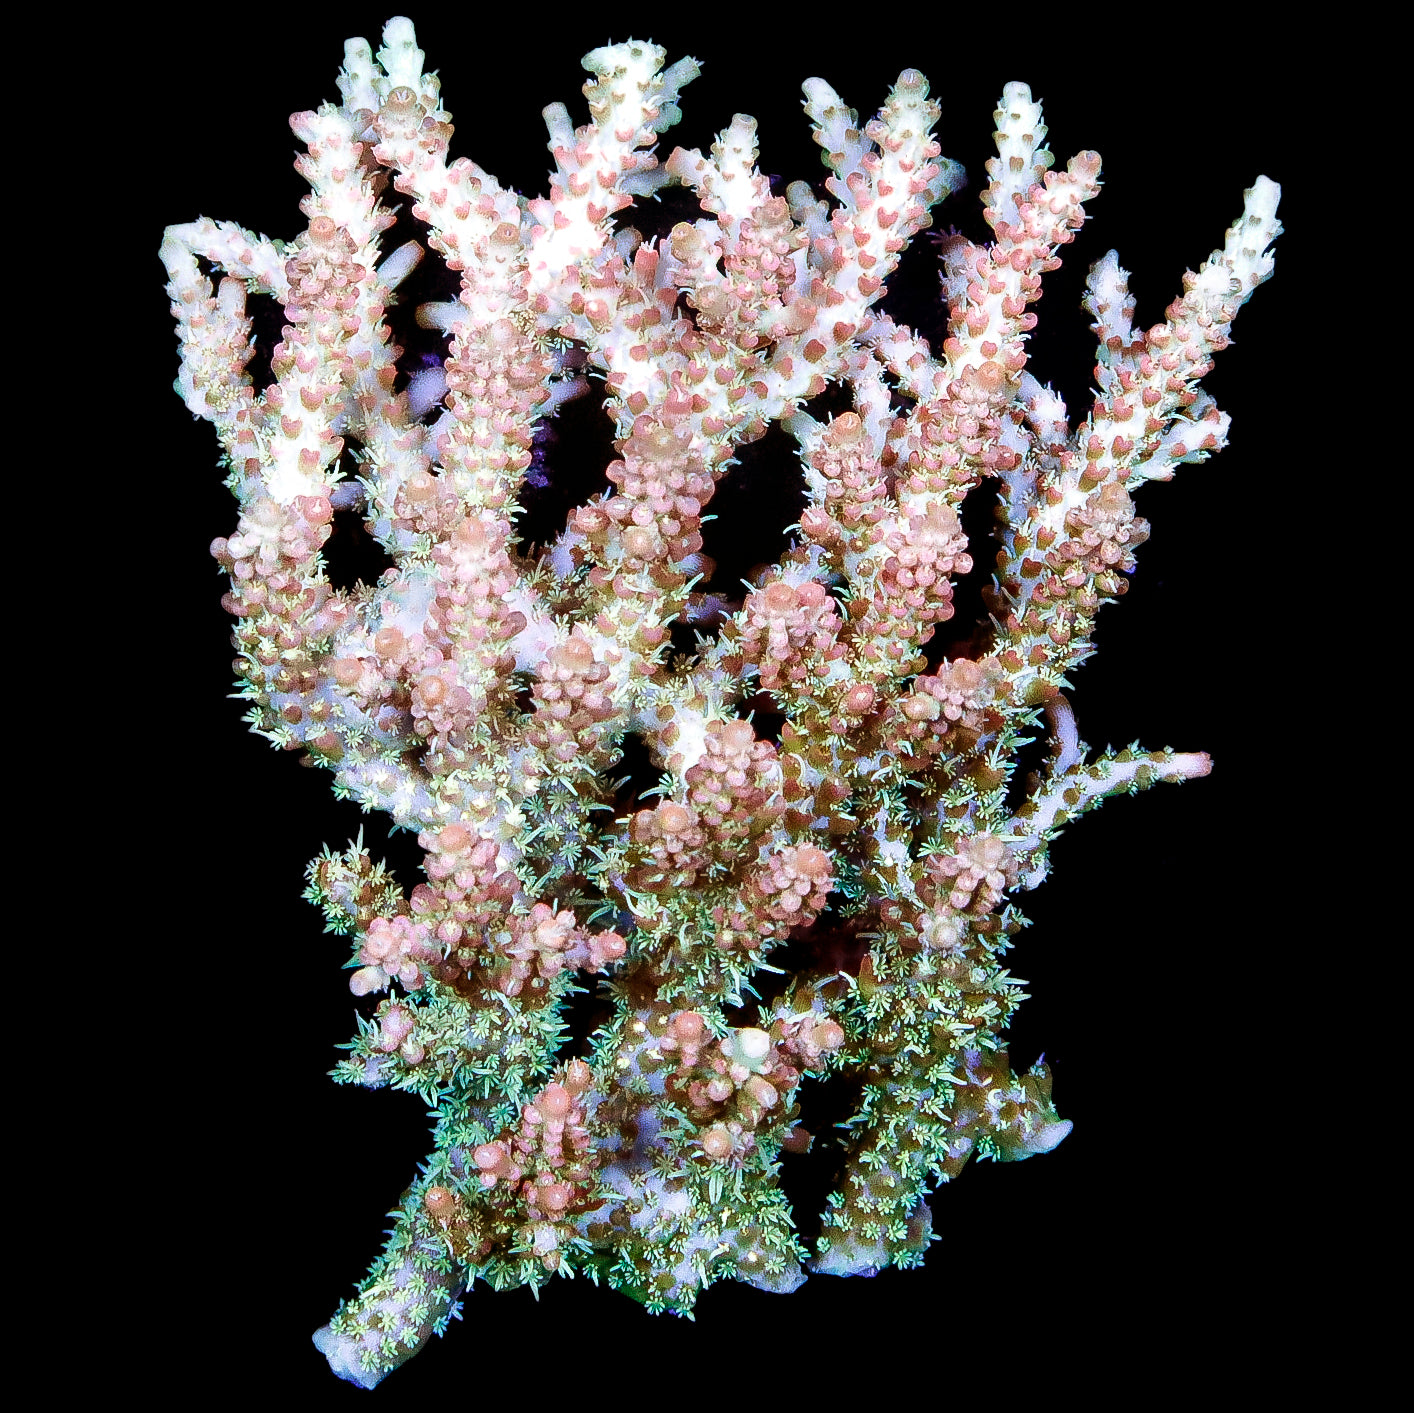 Hairy Habanero Acropora Coral Colony